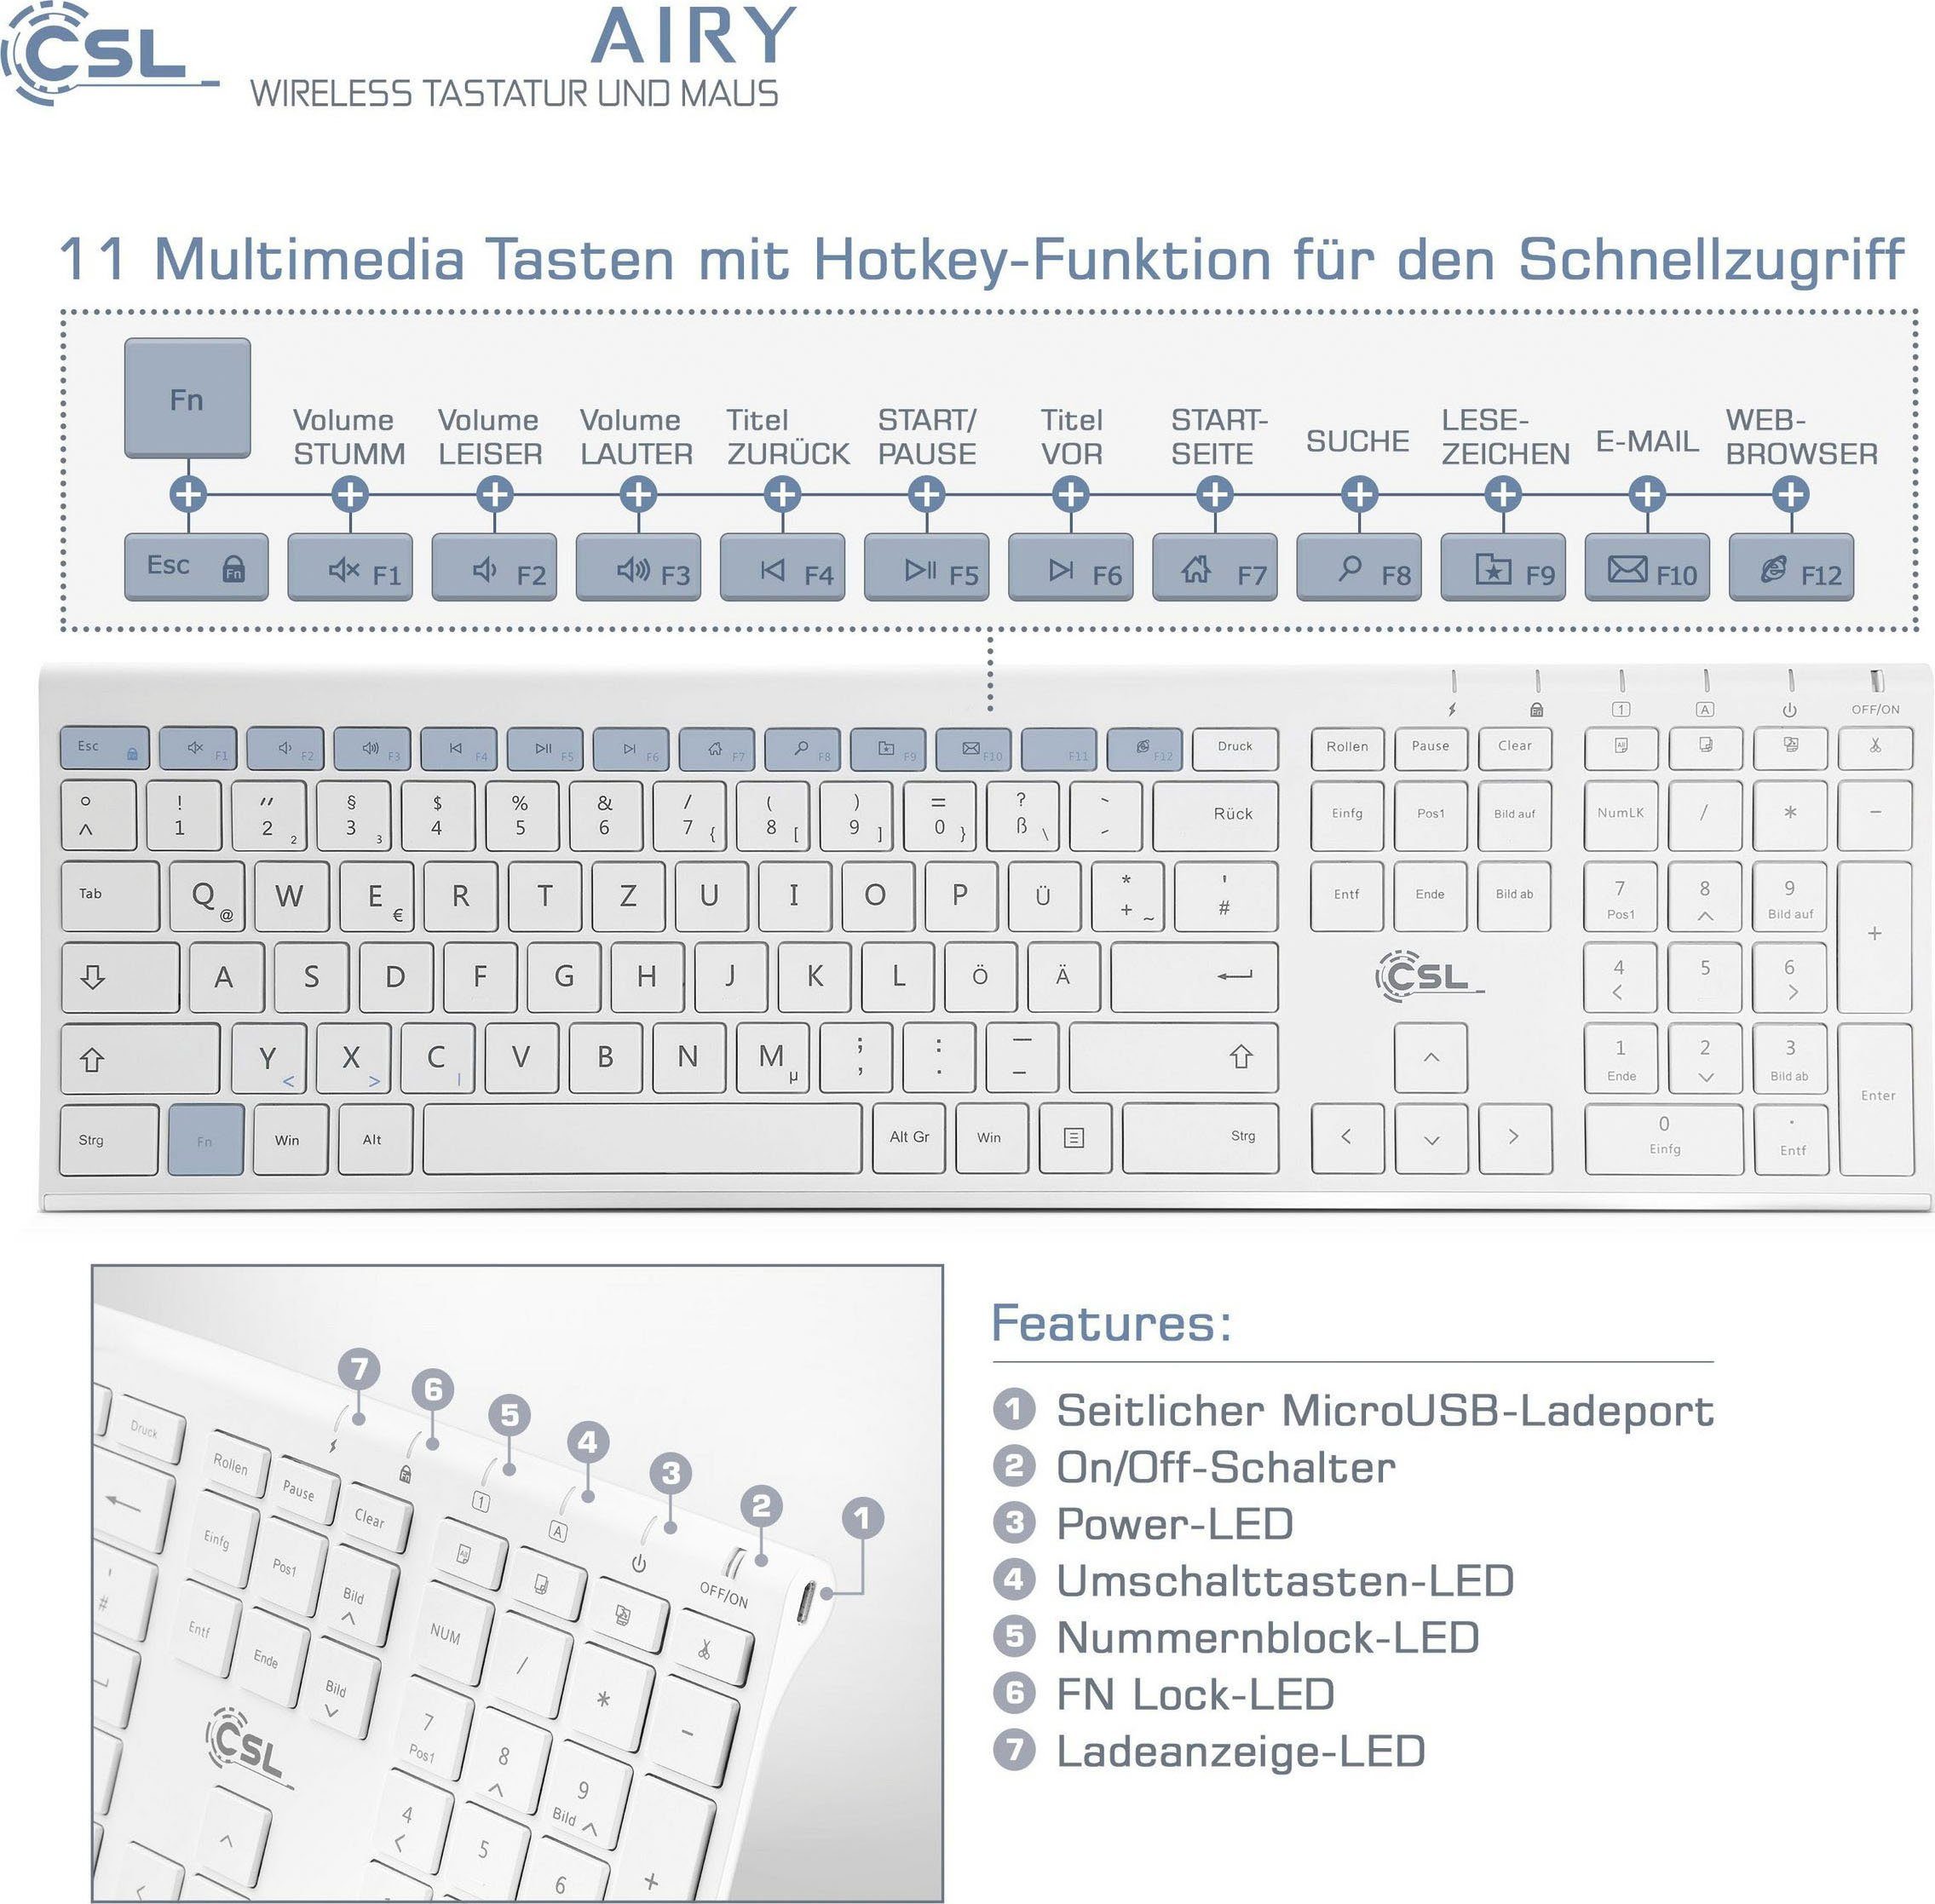 CSL Tastatur- Maus-Set und AIRY